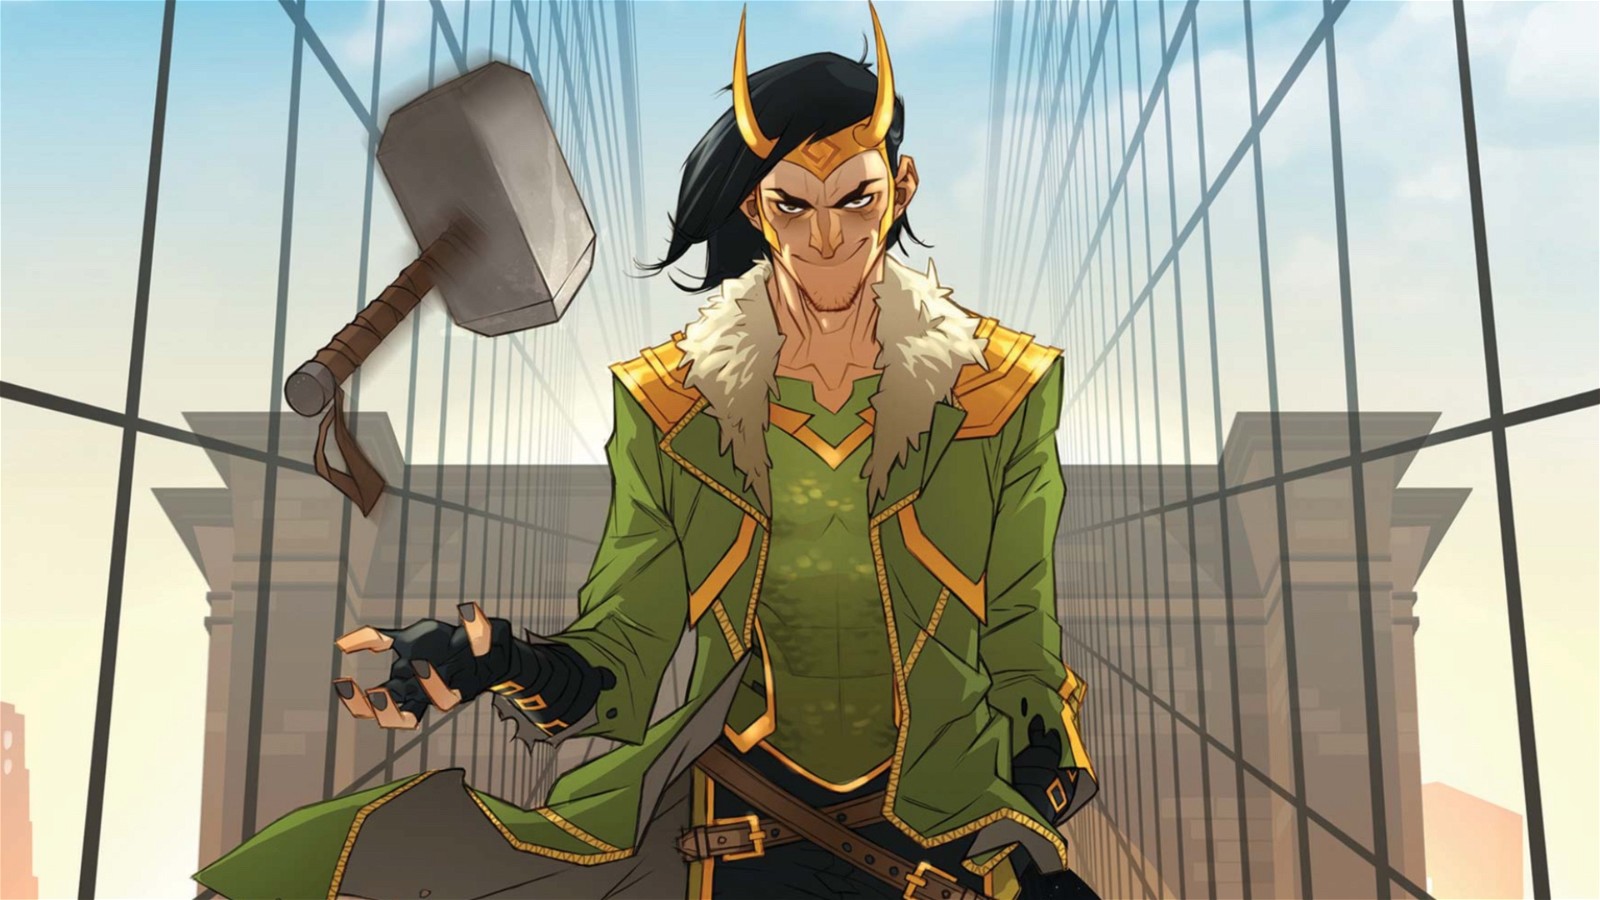 Loki in Marvel comics